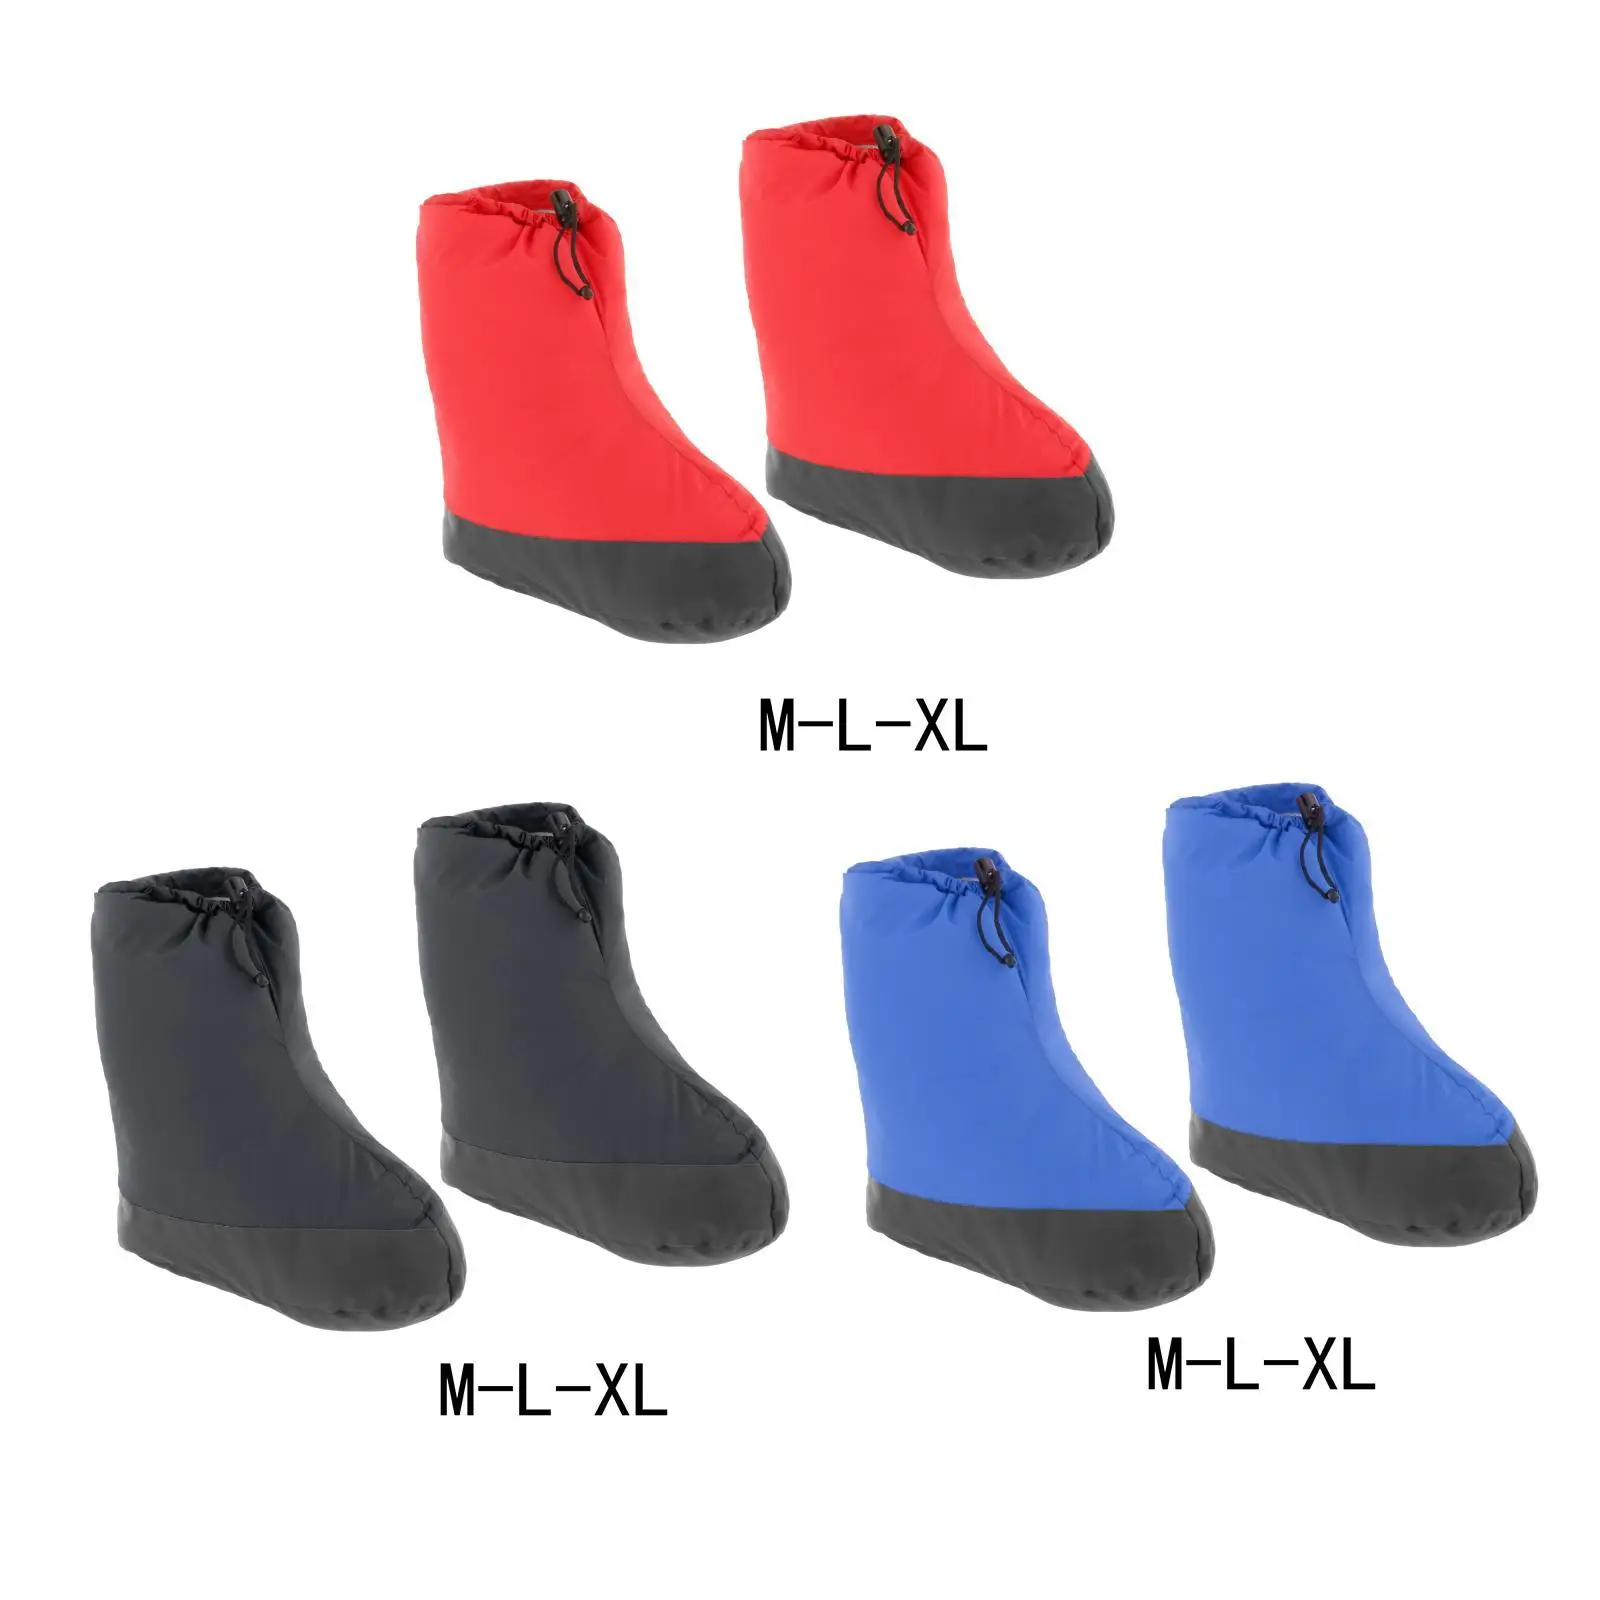 Ördek Aşağı Patik Ayakkabı Ultralight Su Geçirmez Aşağı Dolu Çizmeler Ayakkabı Çorap Terlik Kapalı Erkekler Kadınlar için